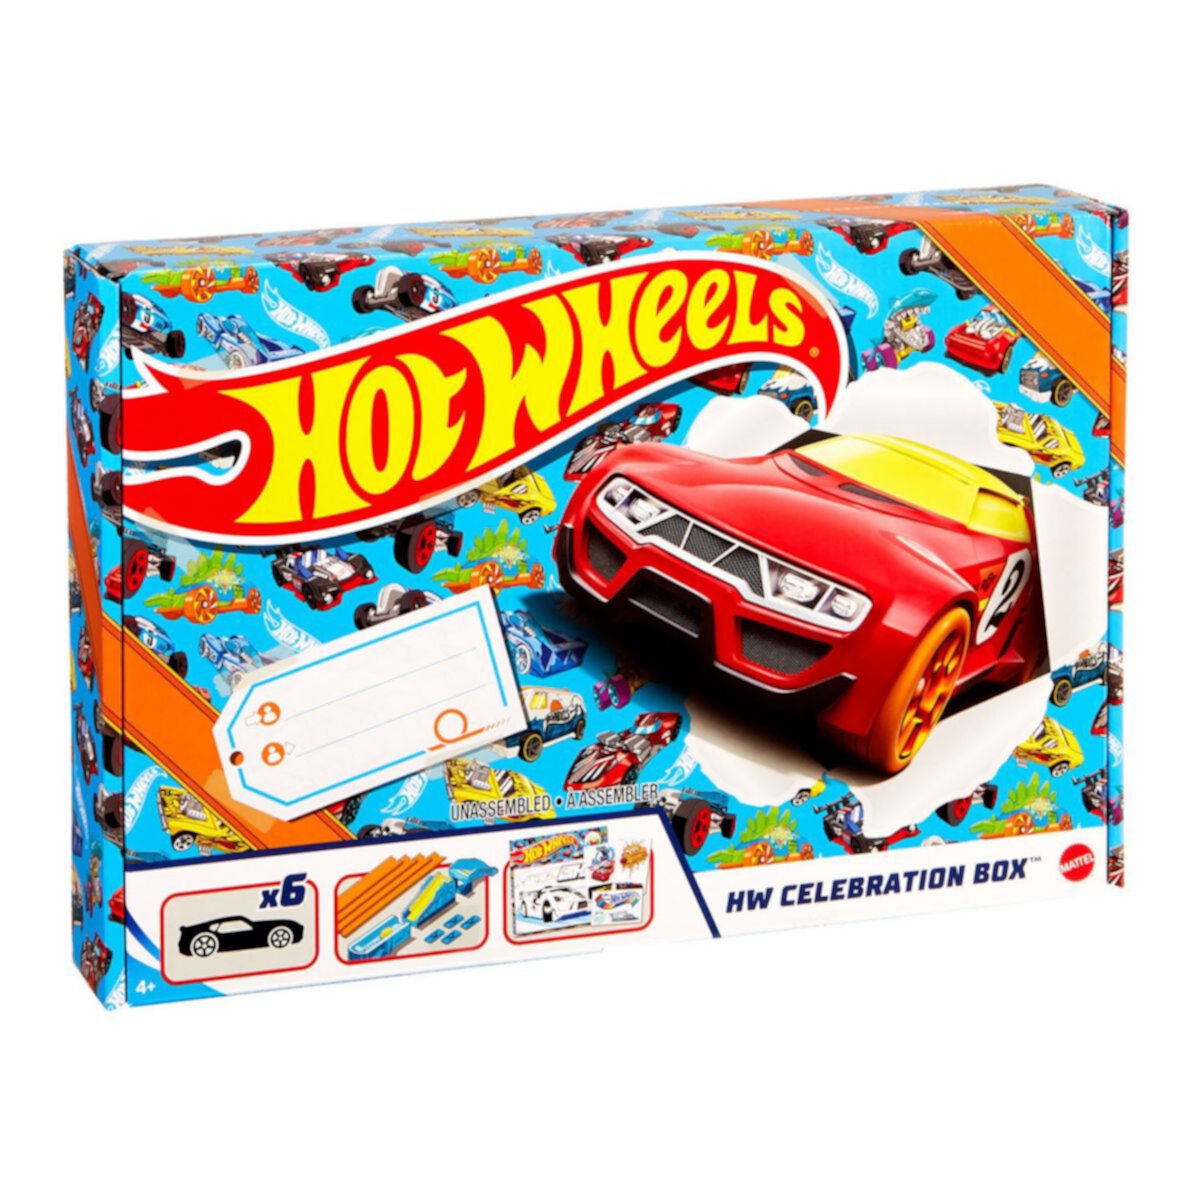 Литые под давлением автомобили и гусеничная коробка Mattel Hot Wheels Mattel